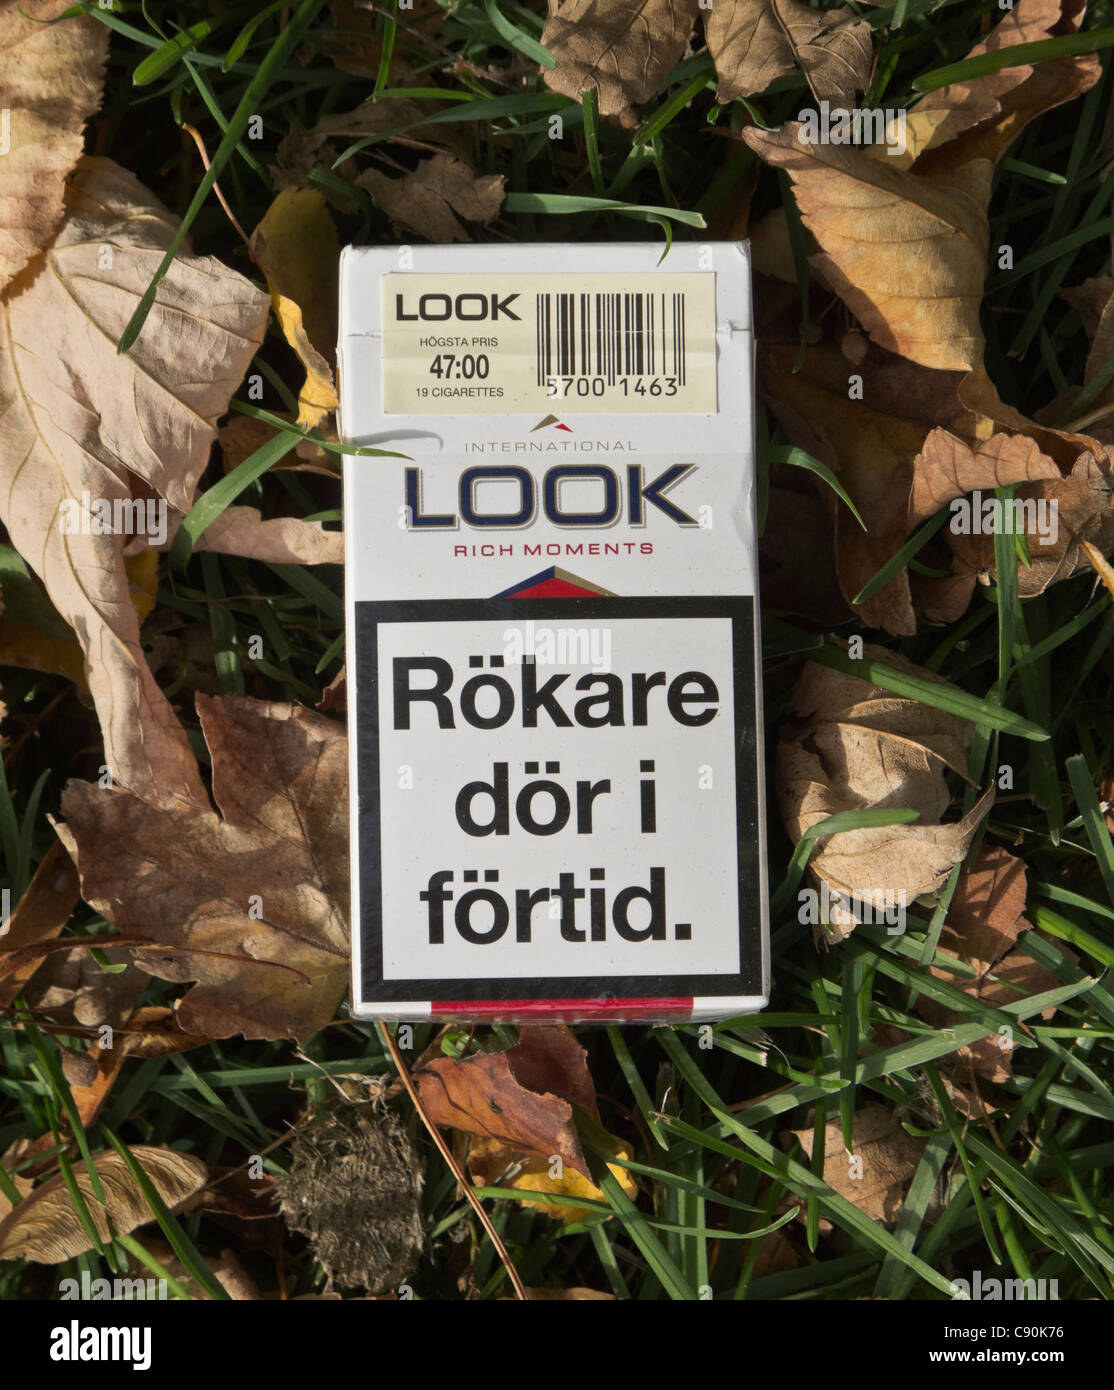 Cercare il pacchetto di sigarette sul terreno. Testo di avviso in lingua svedese afferma "mokers muoiono prematuramente'. Per solo uso editoriale. Foto Stock